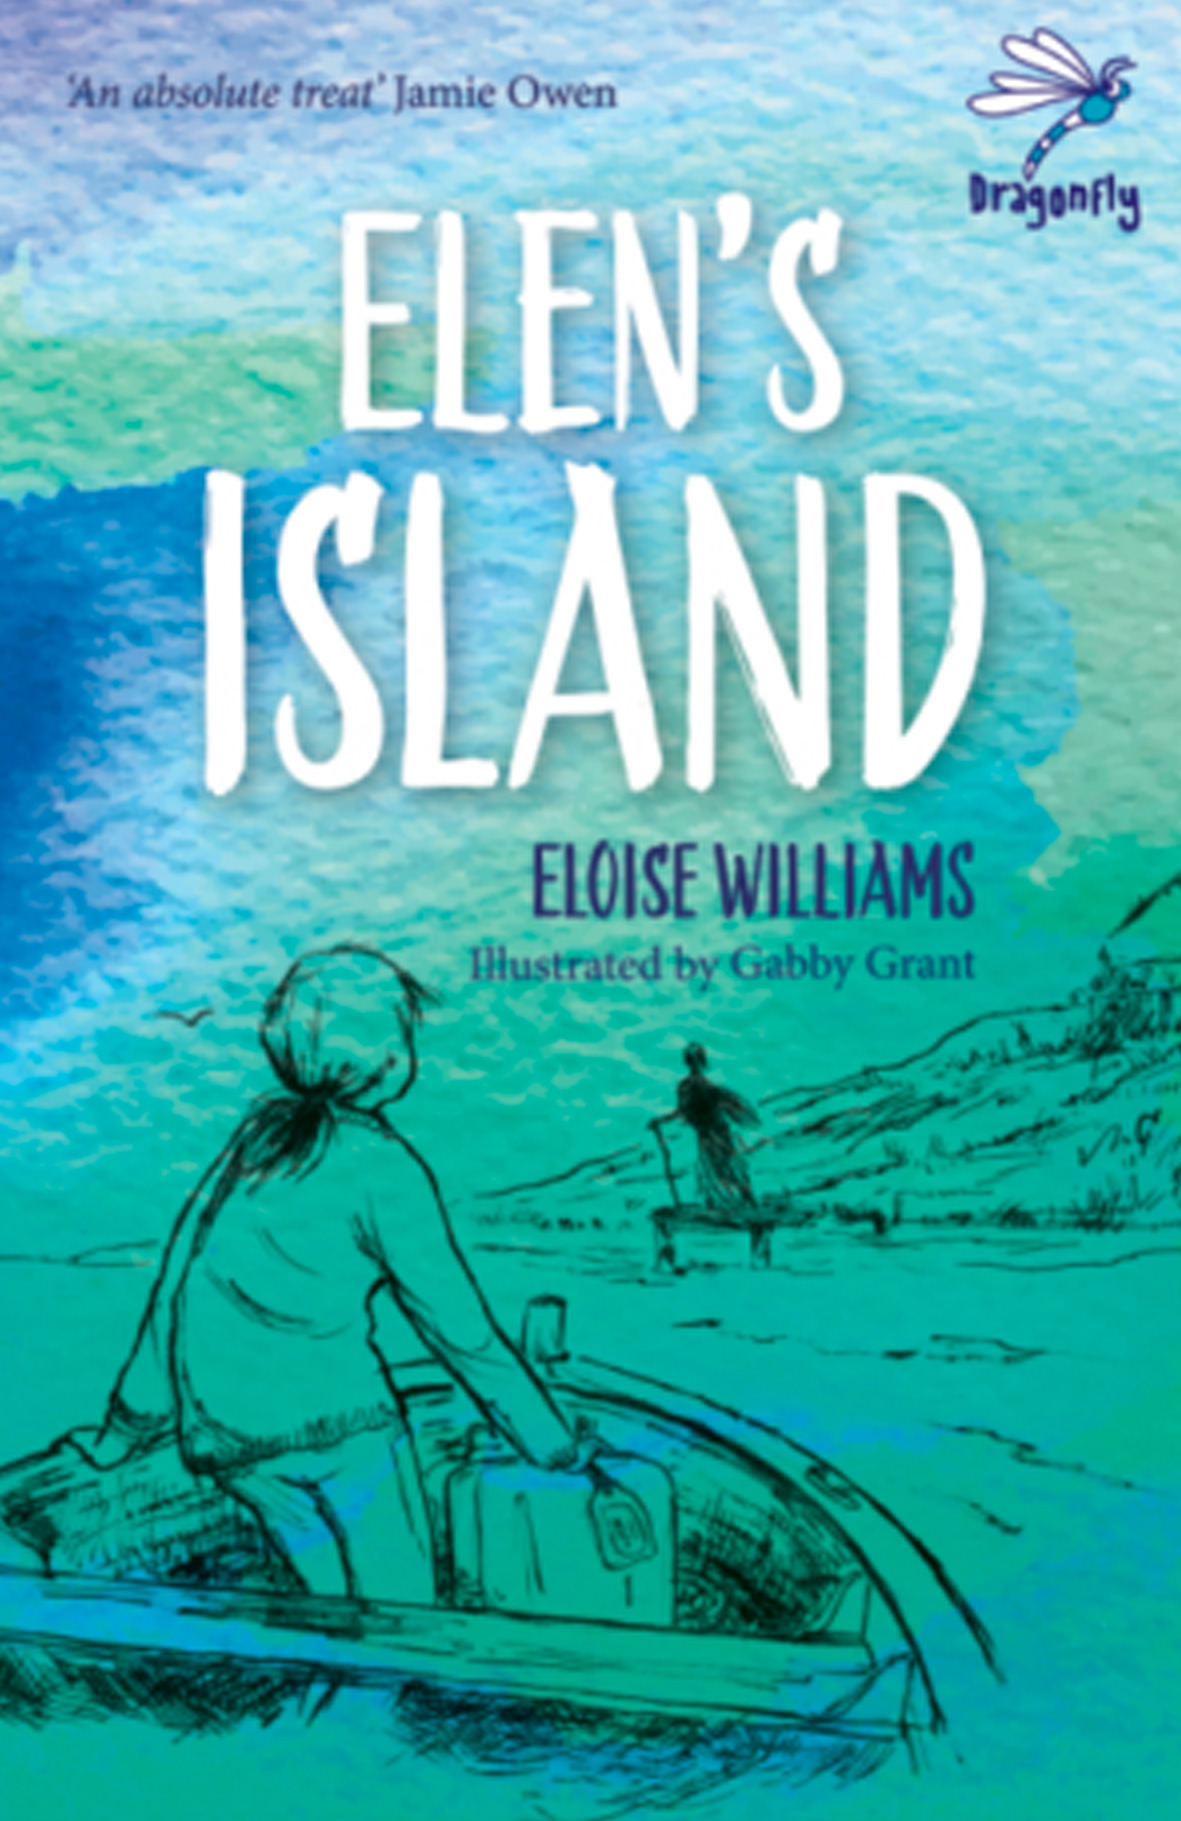 Elen’s Island